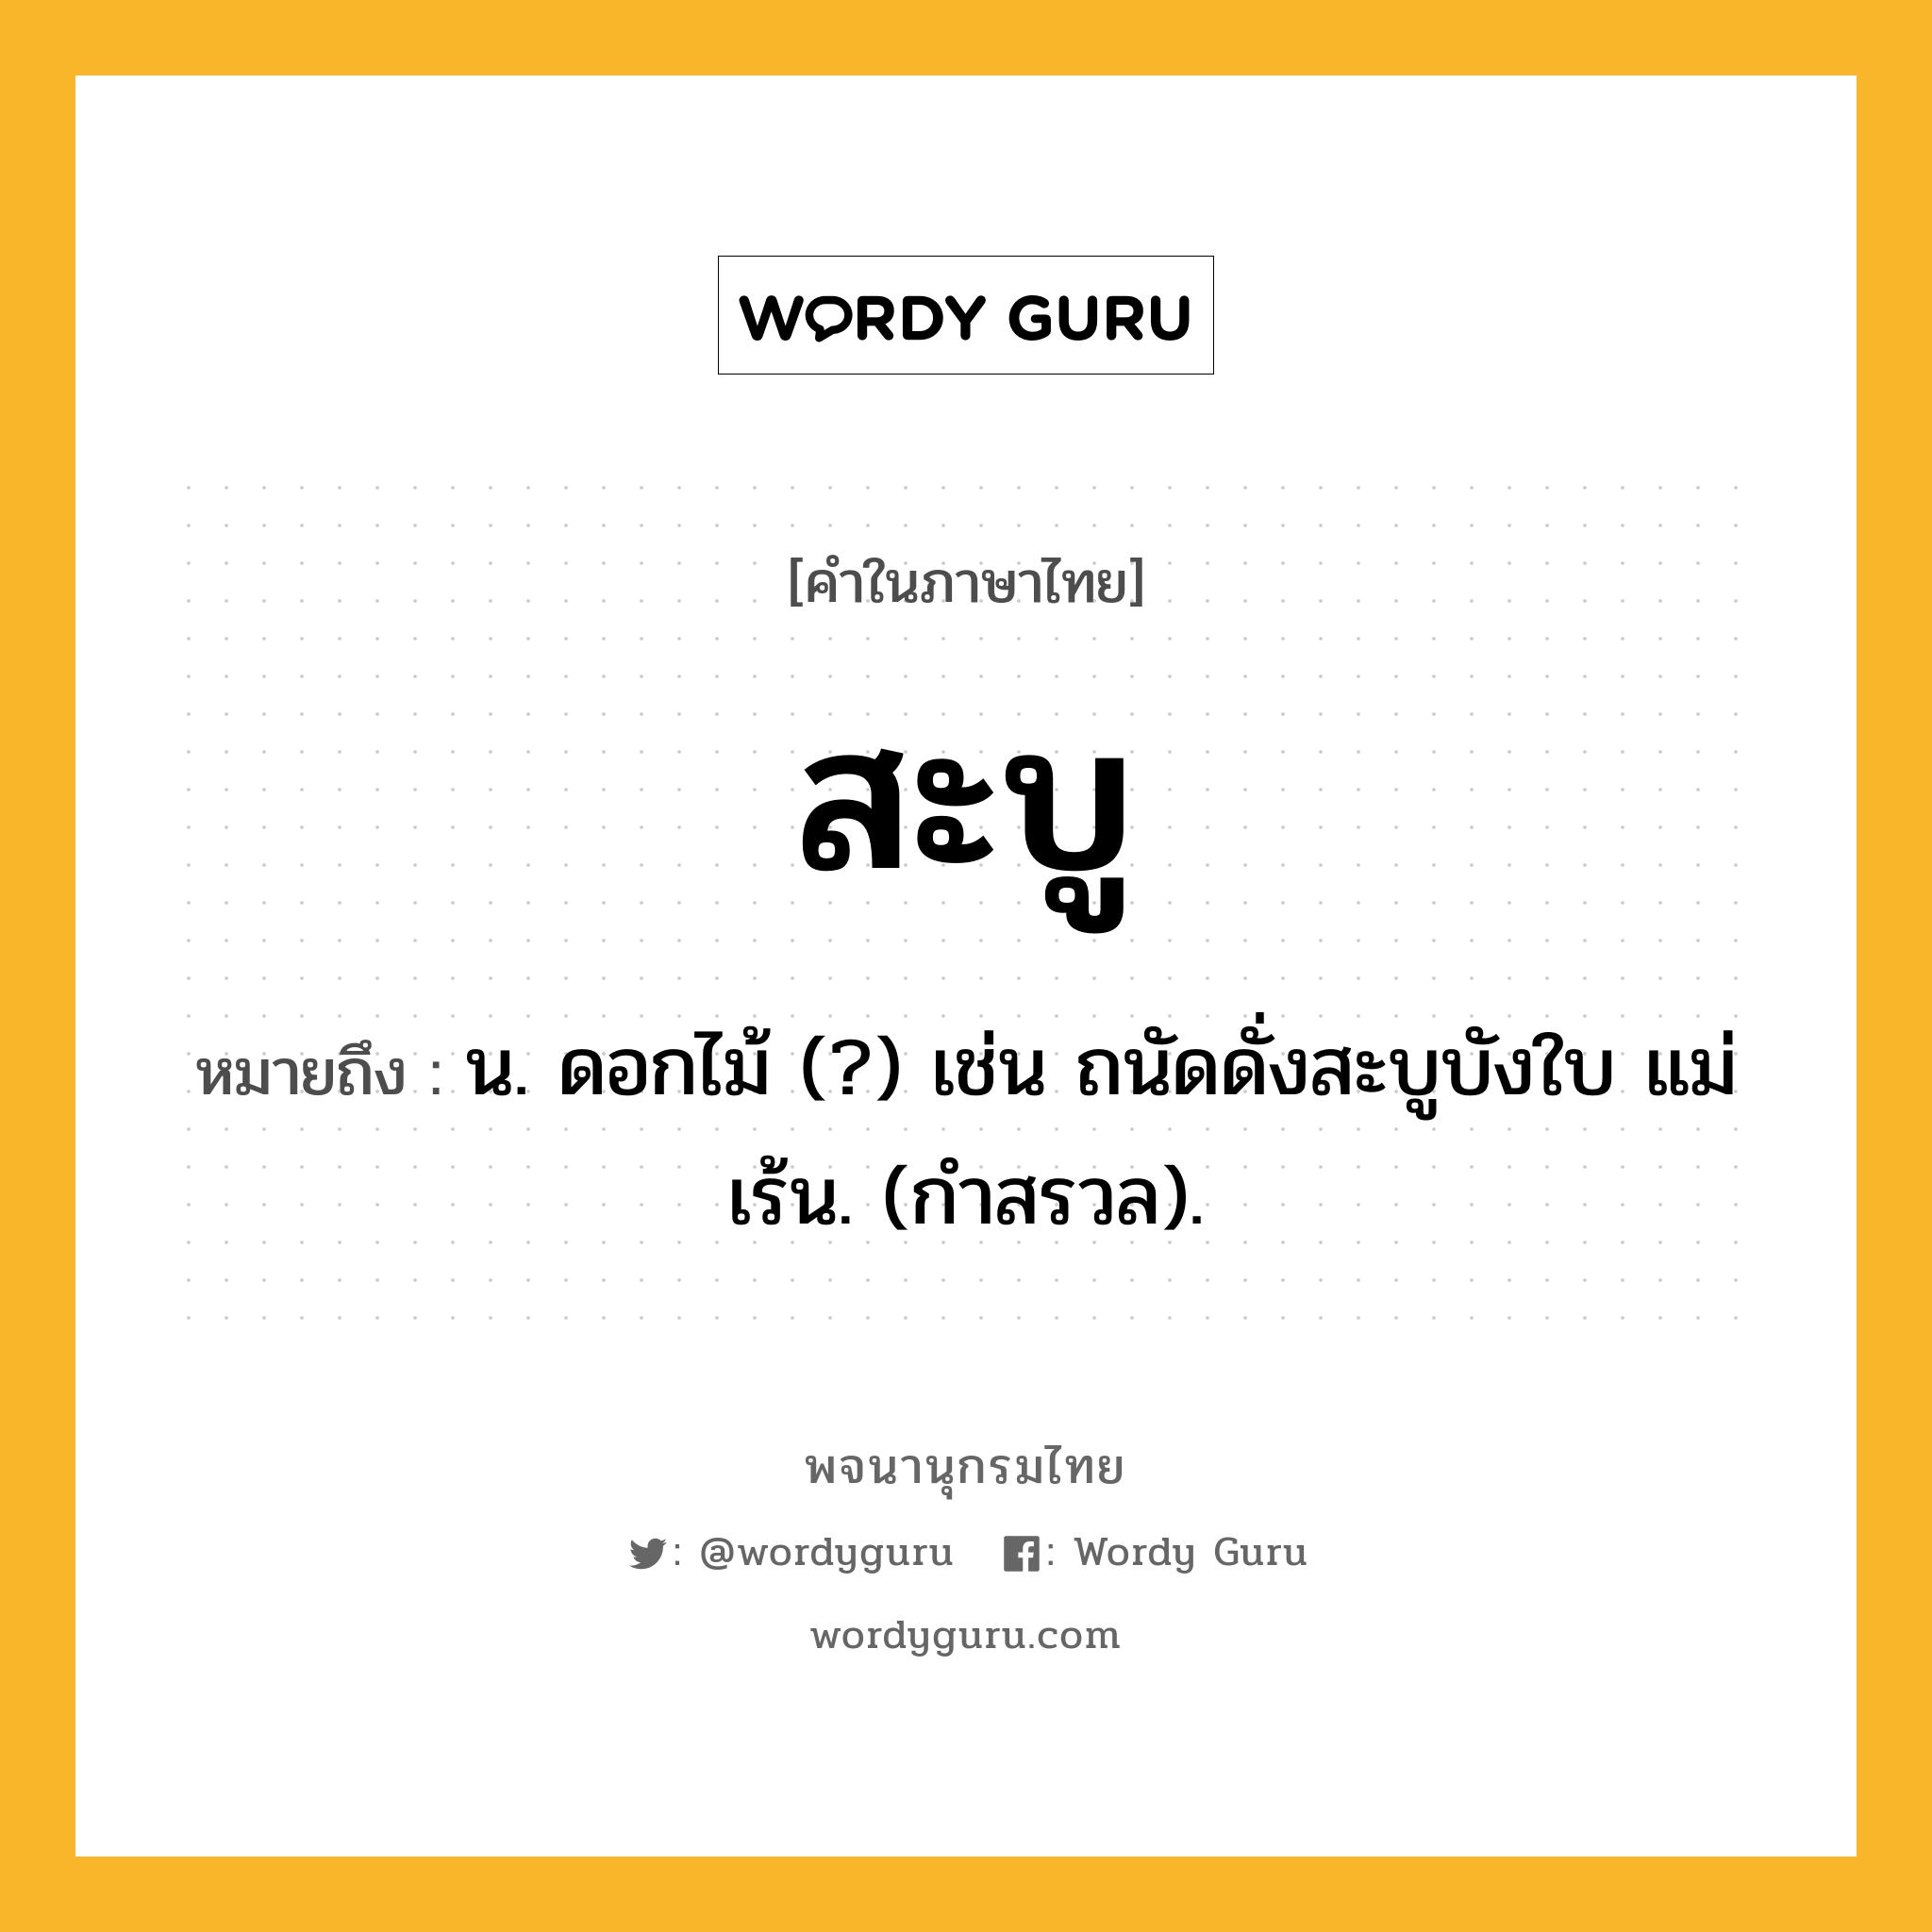 สะบู ความหมาย หมายถึงอะไร?, คำในภาษาไทย สะบู หมายถึง น. ดอกไม้ (?) เช่น ถนัดดั่งสะบูบังใบ แม่เร้น. (กําสรวล).